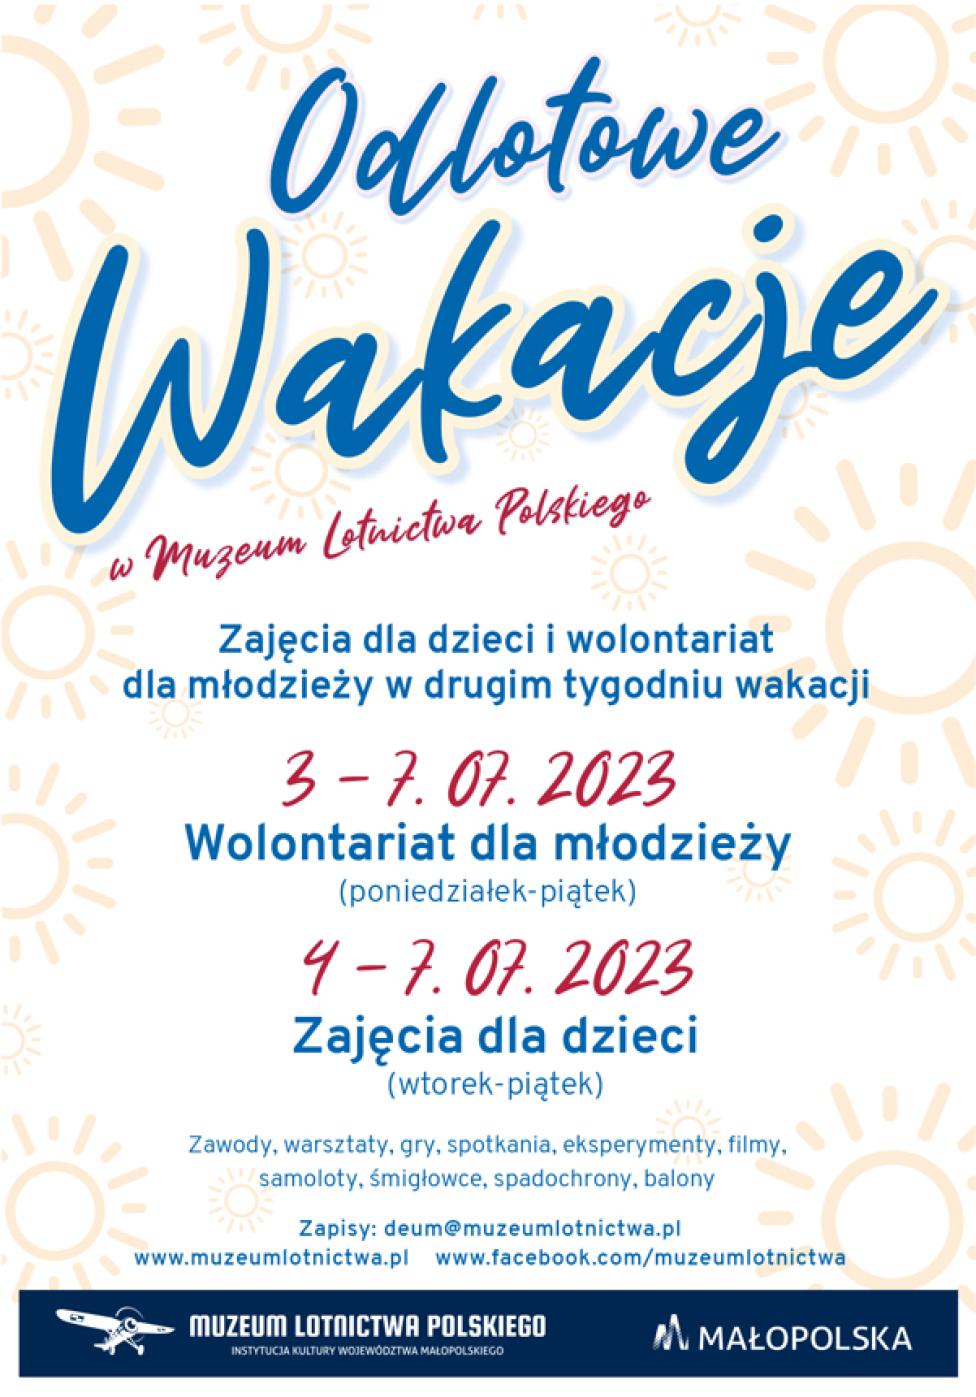 Odlotowe Wakacje 2023 w Muzeum Lotnictwa Polskiego - plakat (fot. Muzeum Lotnictwa Polskiego)